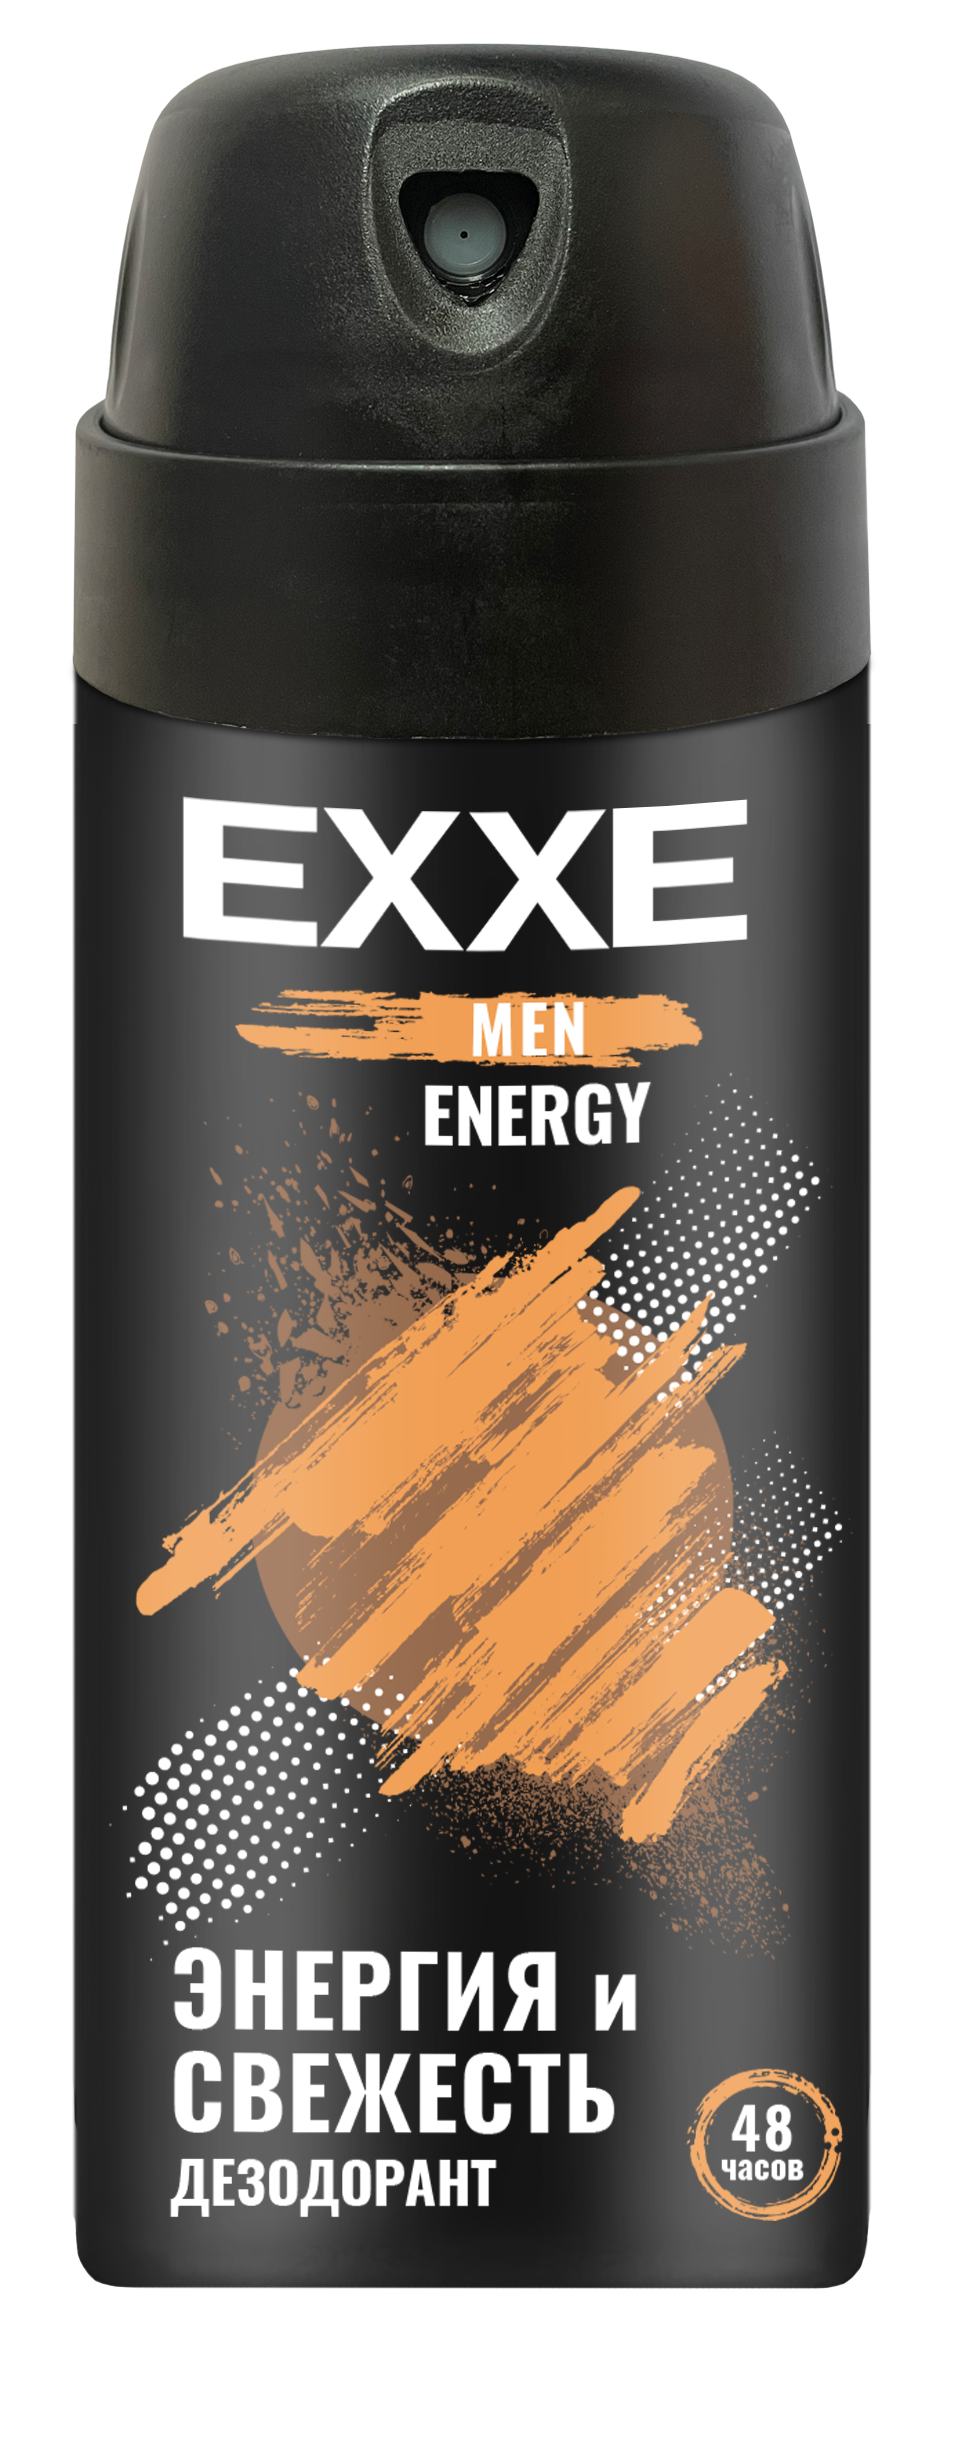 Мужской дезодорант EXXE MEN ENERGY, аэрозоль, 150 мл дезодорант спрей мужской luxelite legend 200 мл